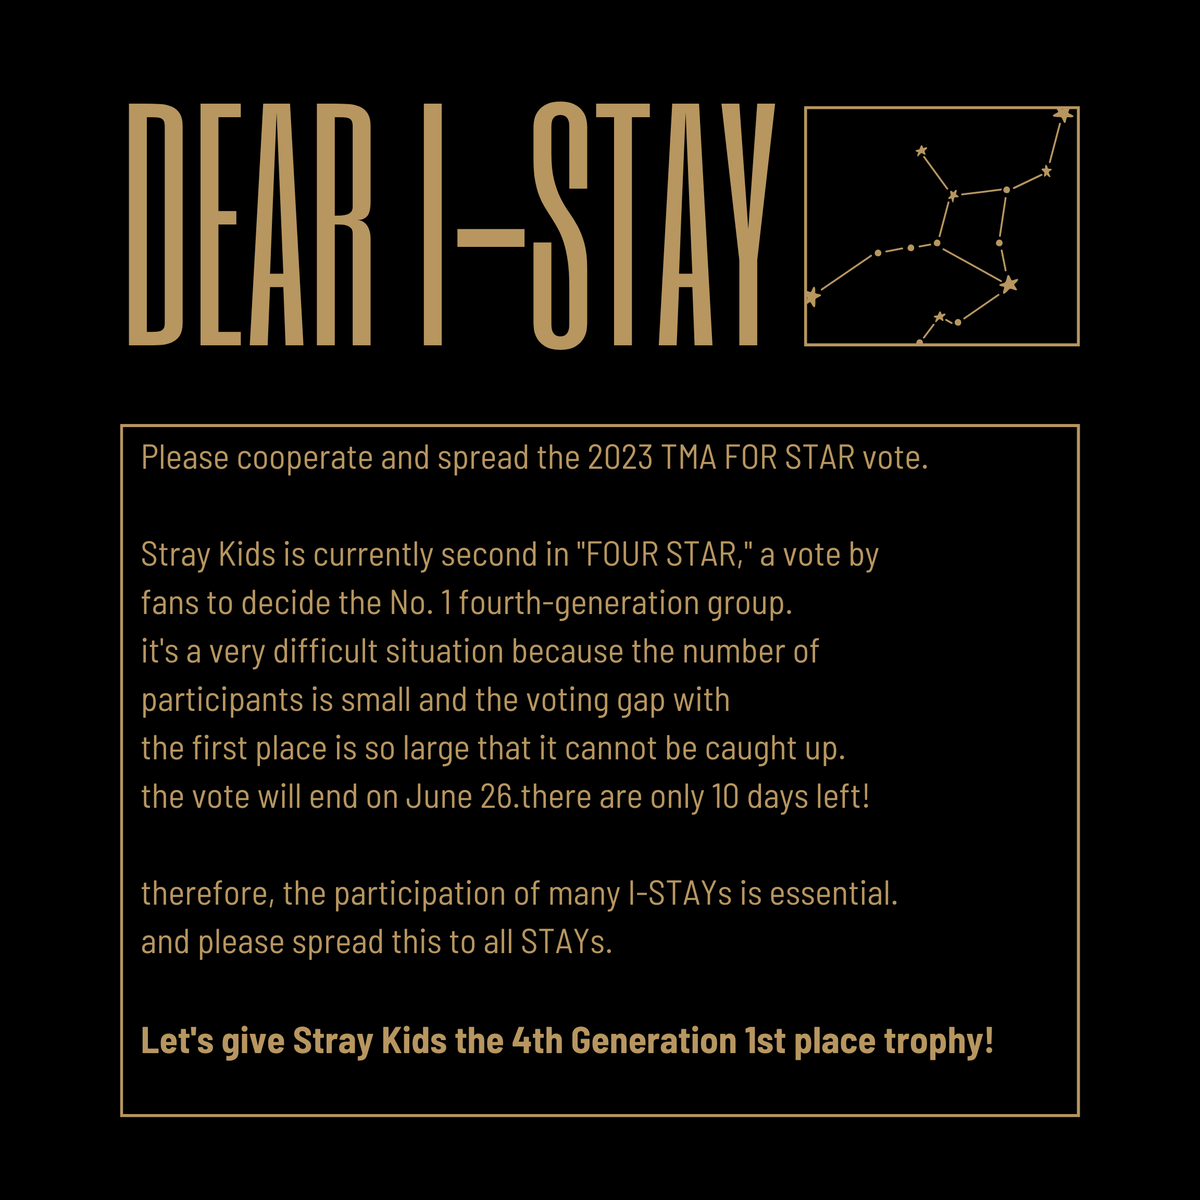 【拡散希望】
Dear I-STAY

#StrayKids #2023TMA #TMA
#YouMakeStrayKidsStay